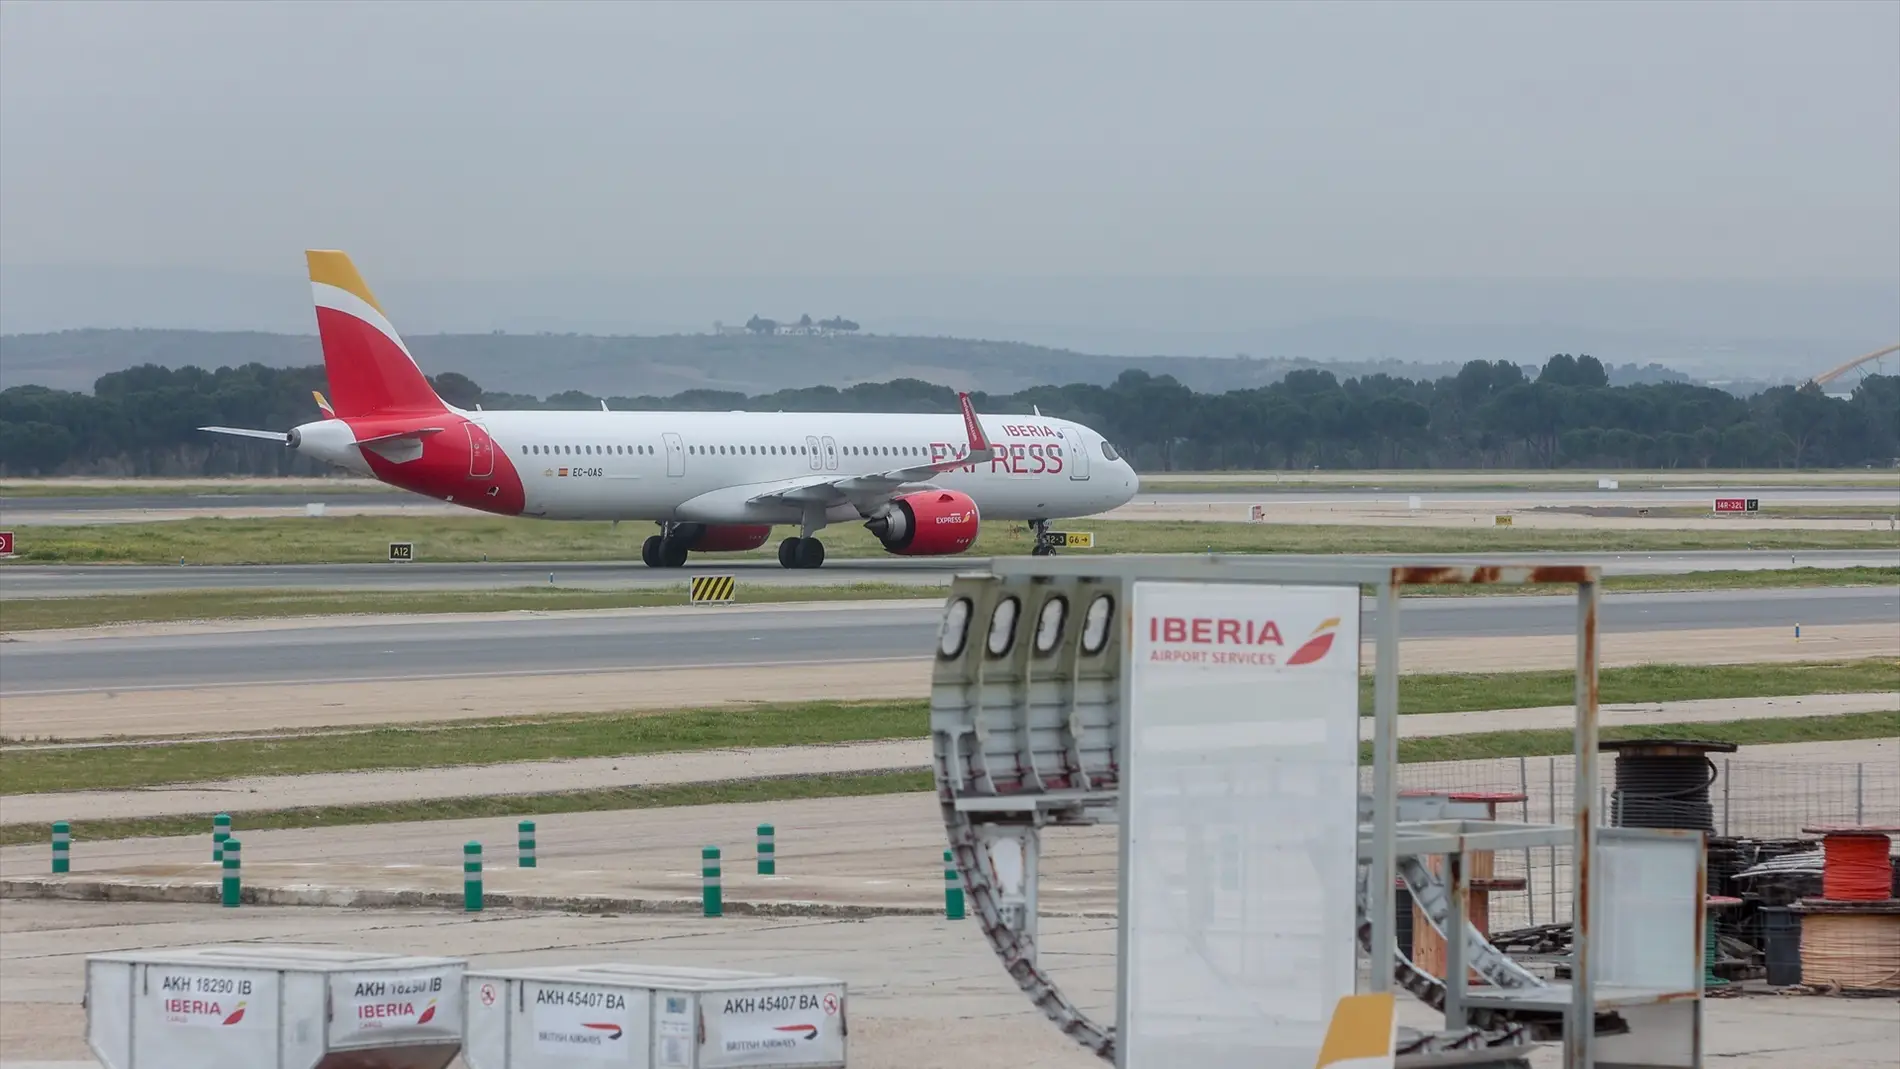 Imagen de un vuelo de Iberia en un aeropuerto